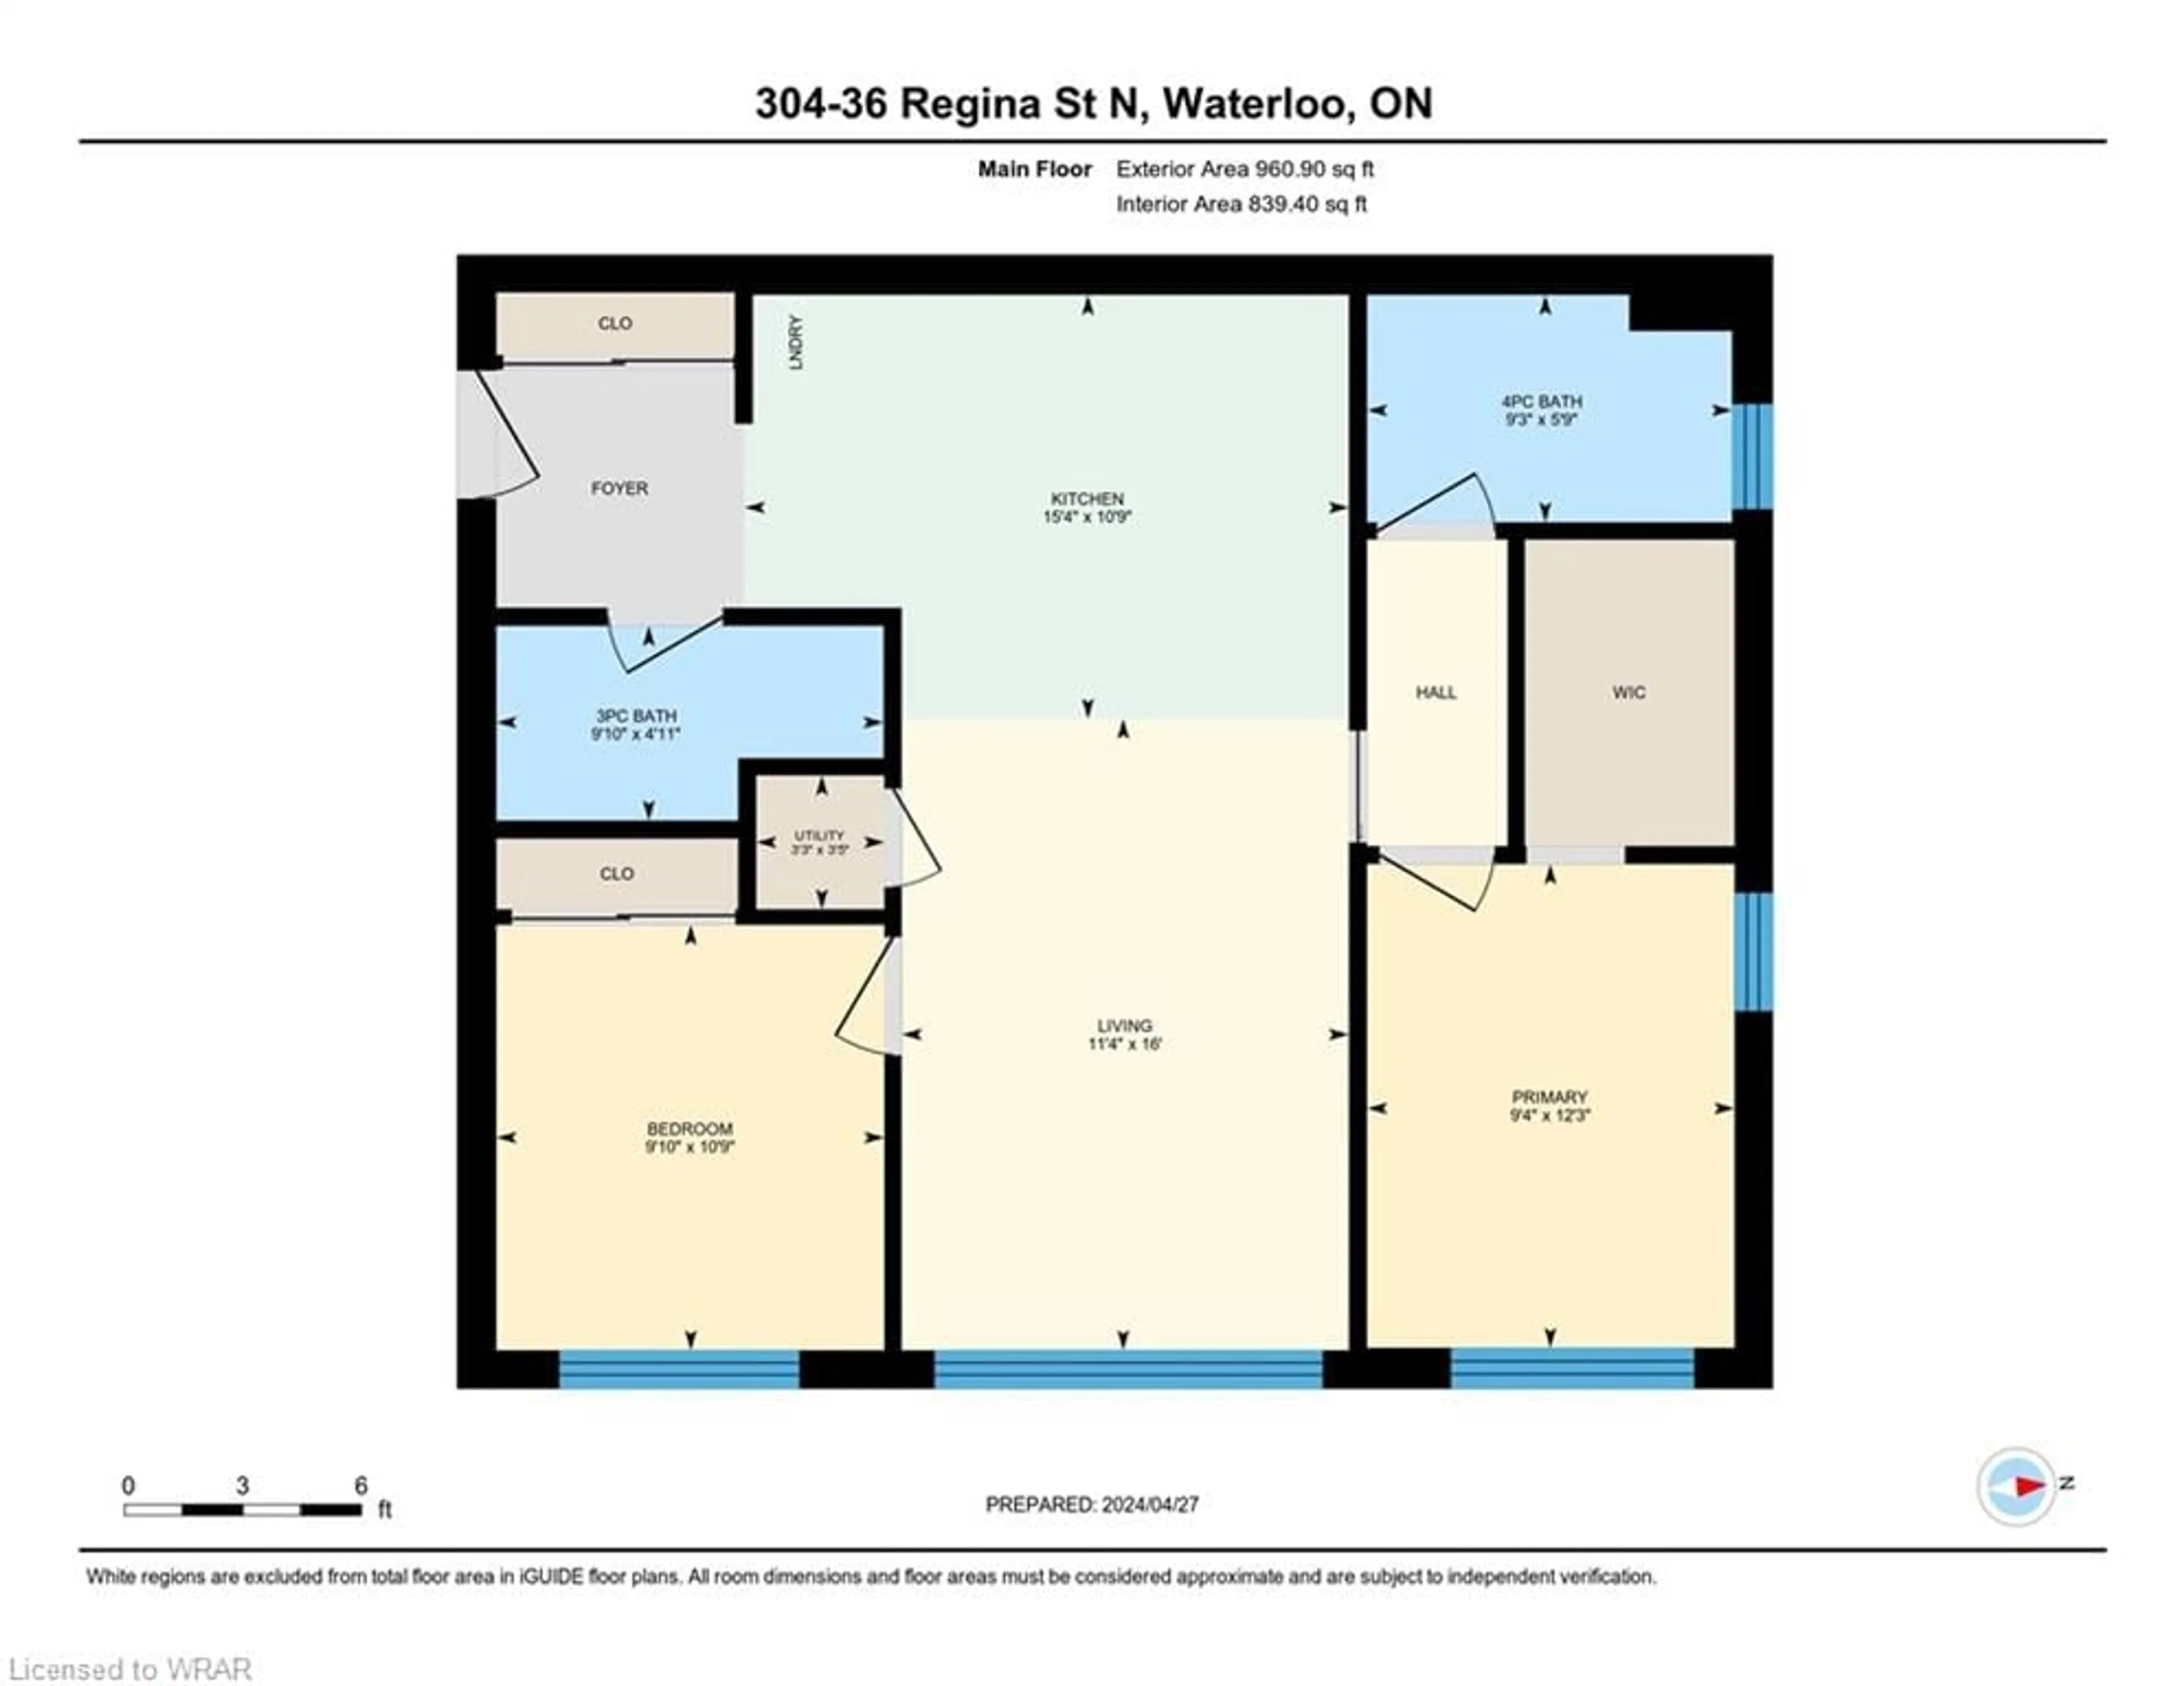 Floor plan for 36 Regina St #304, Waterloo Ontario N2J 3A2